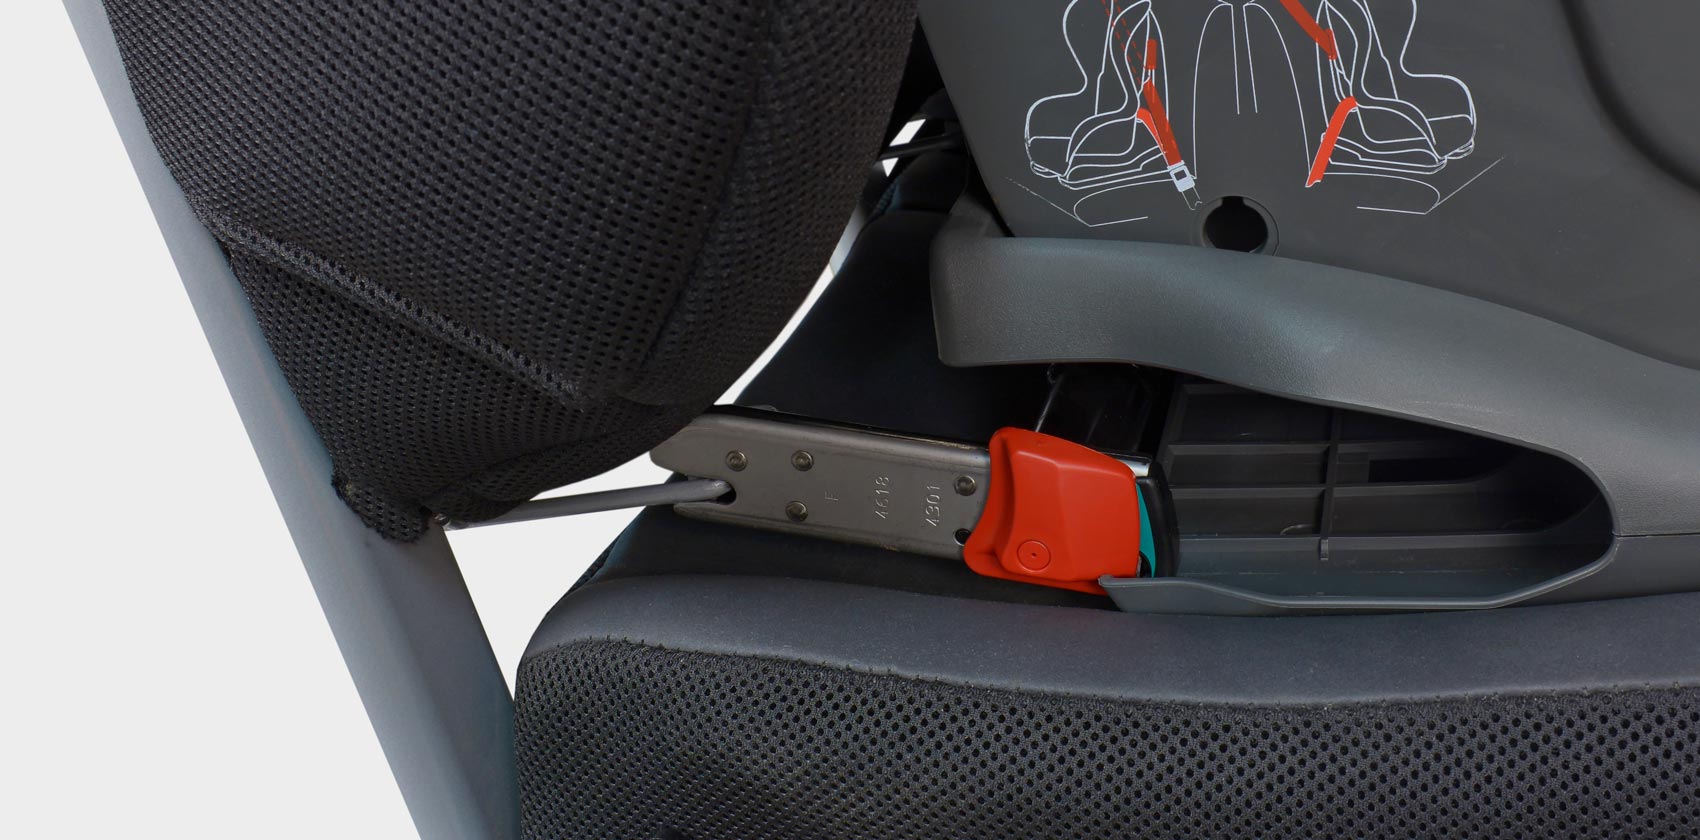 Как крепить детское сиденье в машине: Как установить и пристегивать детское кресло в машине